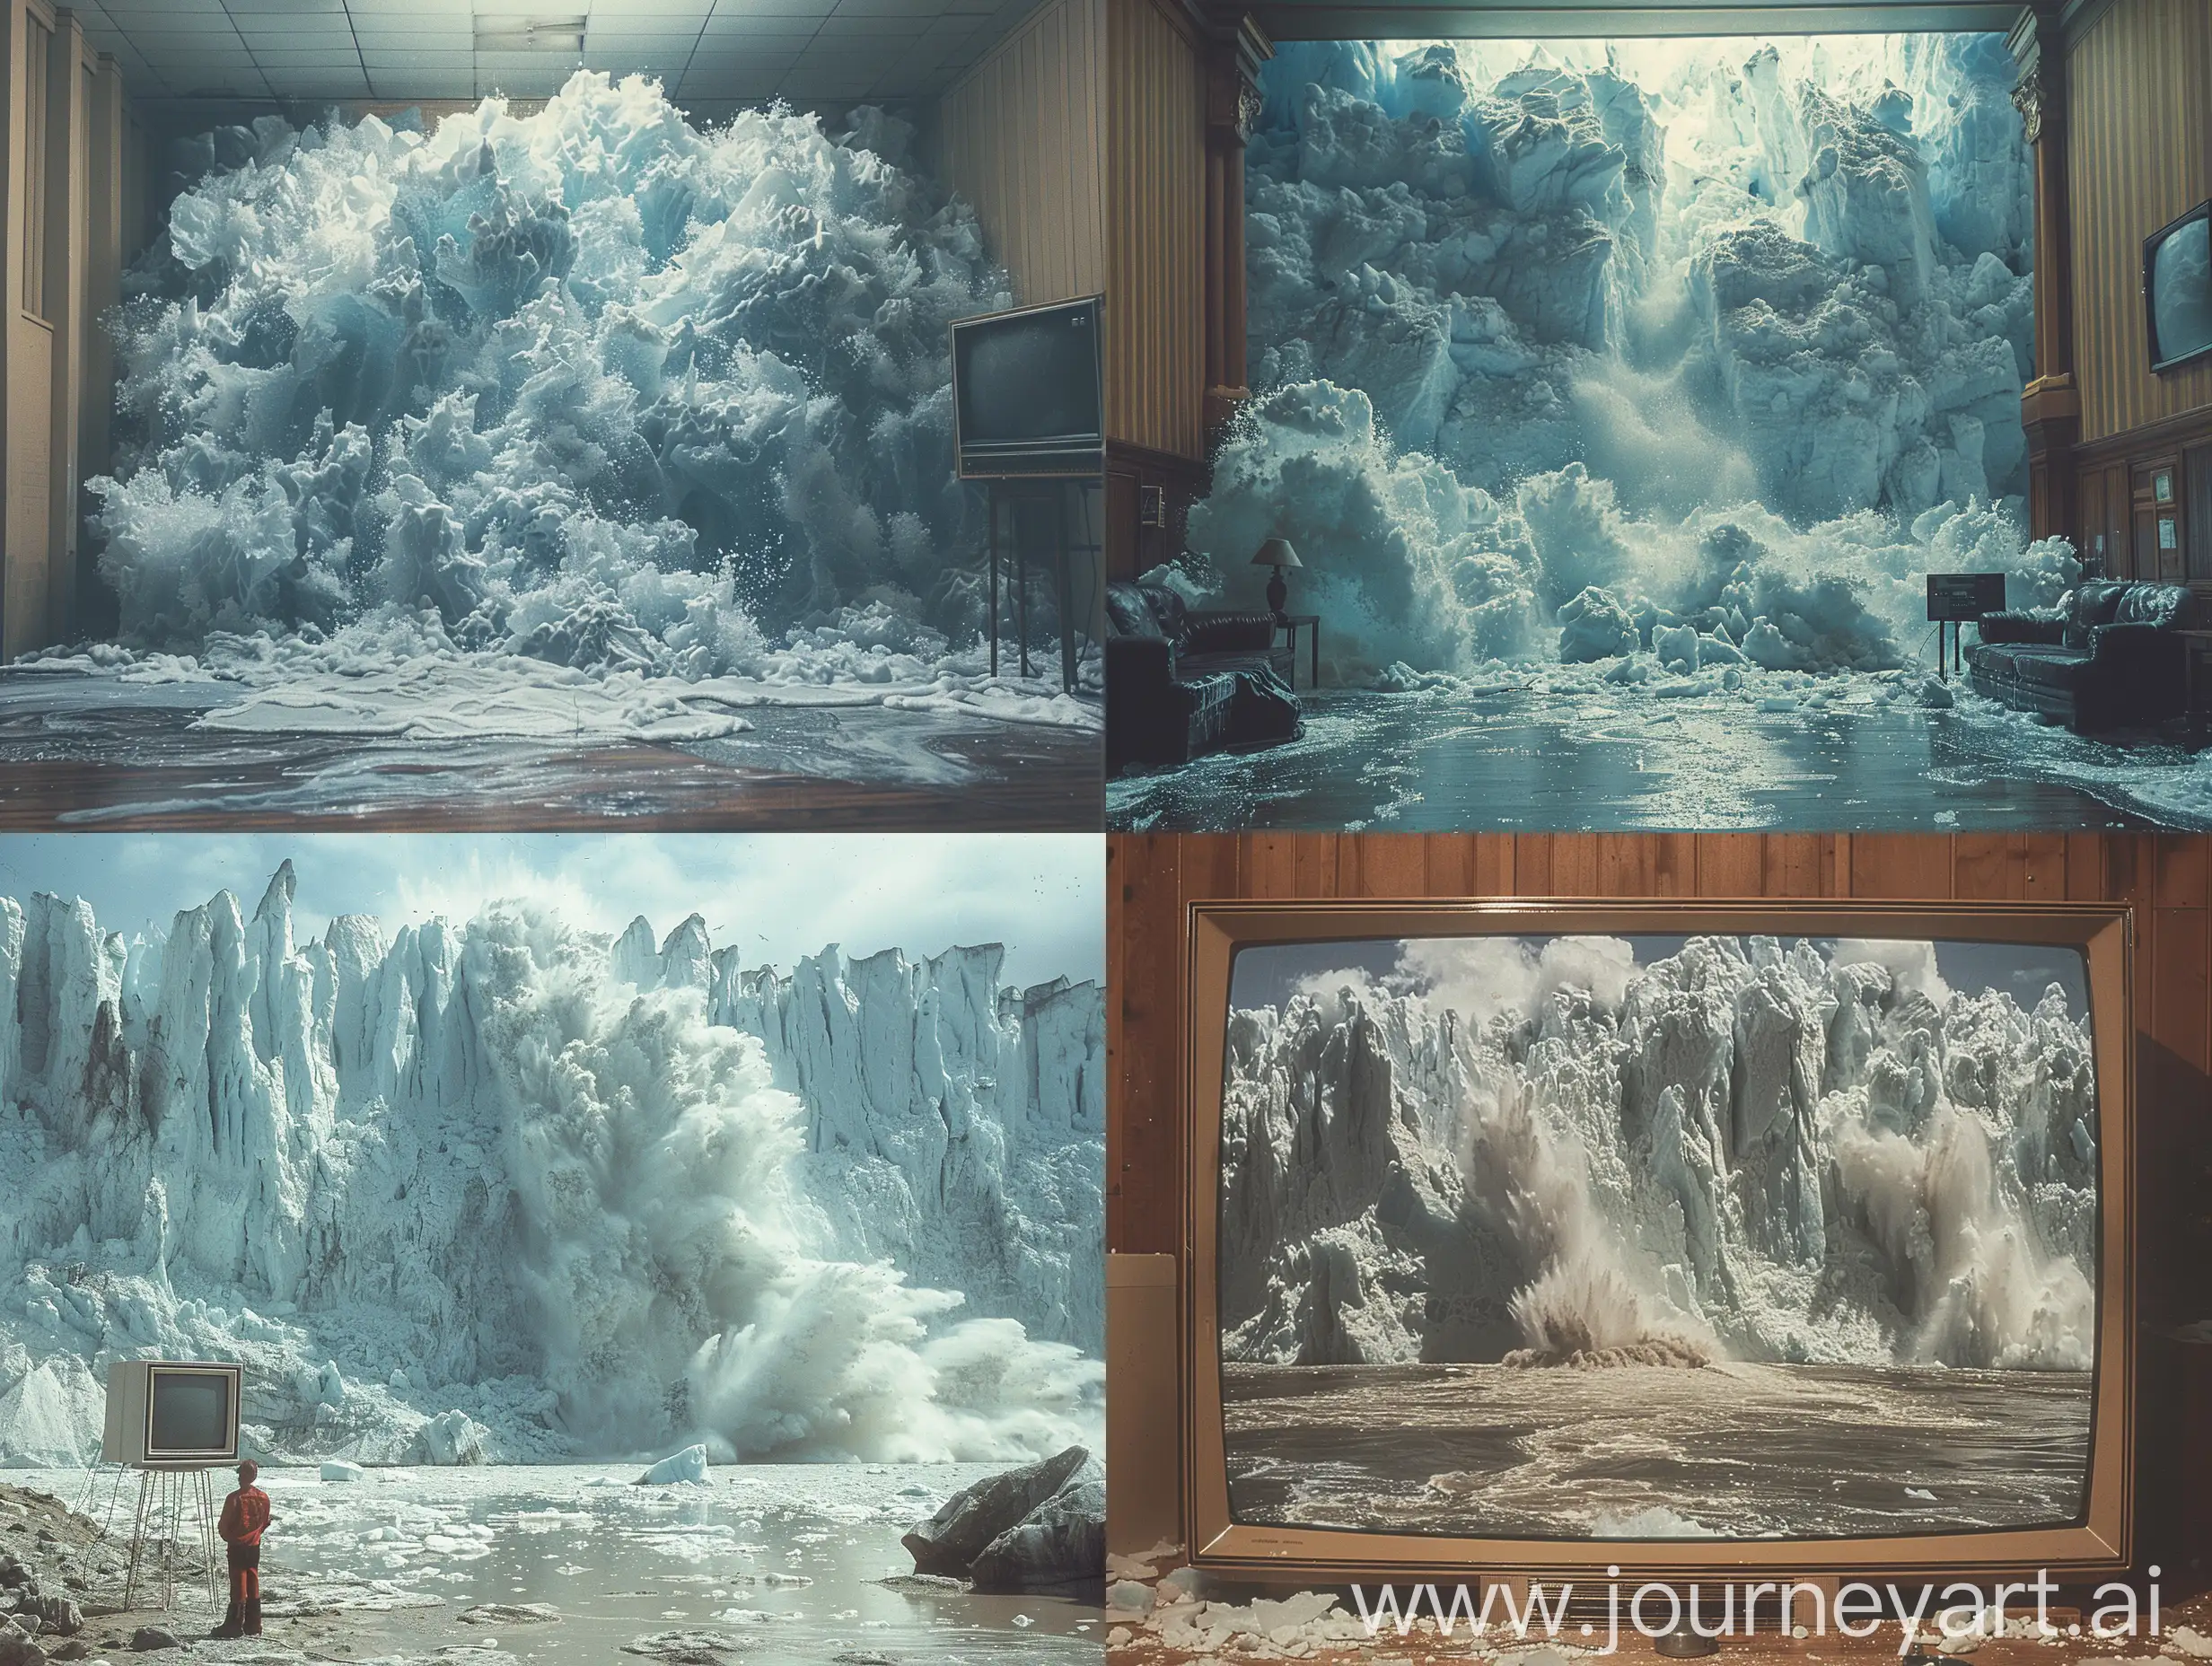 Glacial-Landslide-Triggering-Megatsunami-in-Fjord-1990s-CRT-TV-Midwest-Basement-Footage